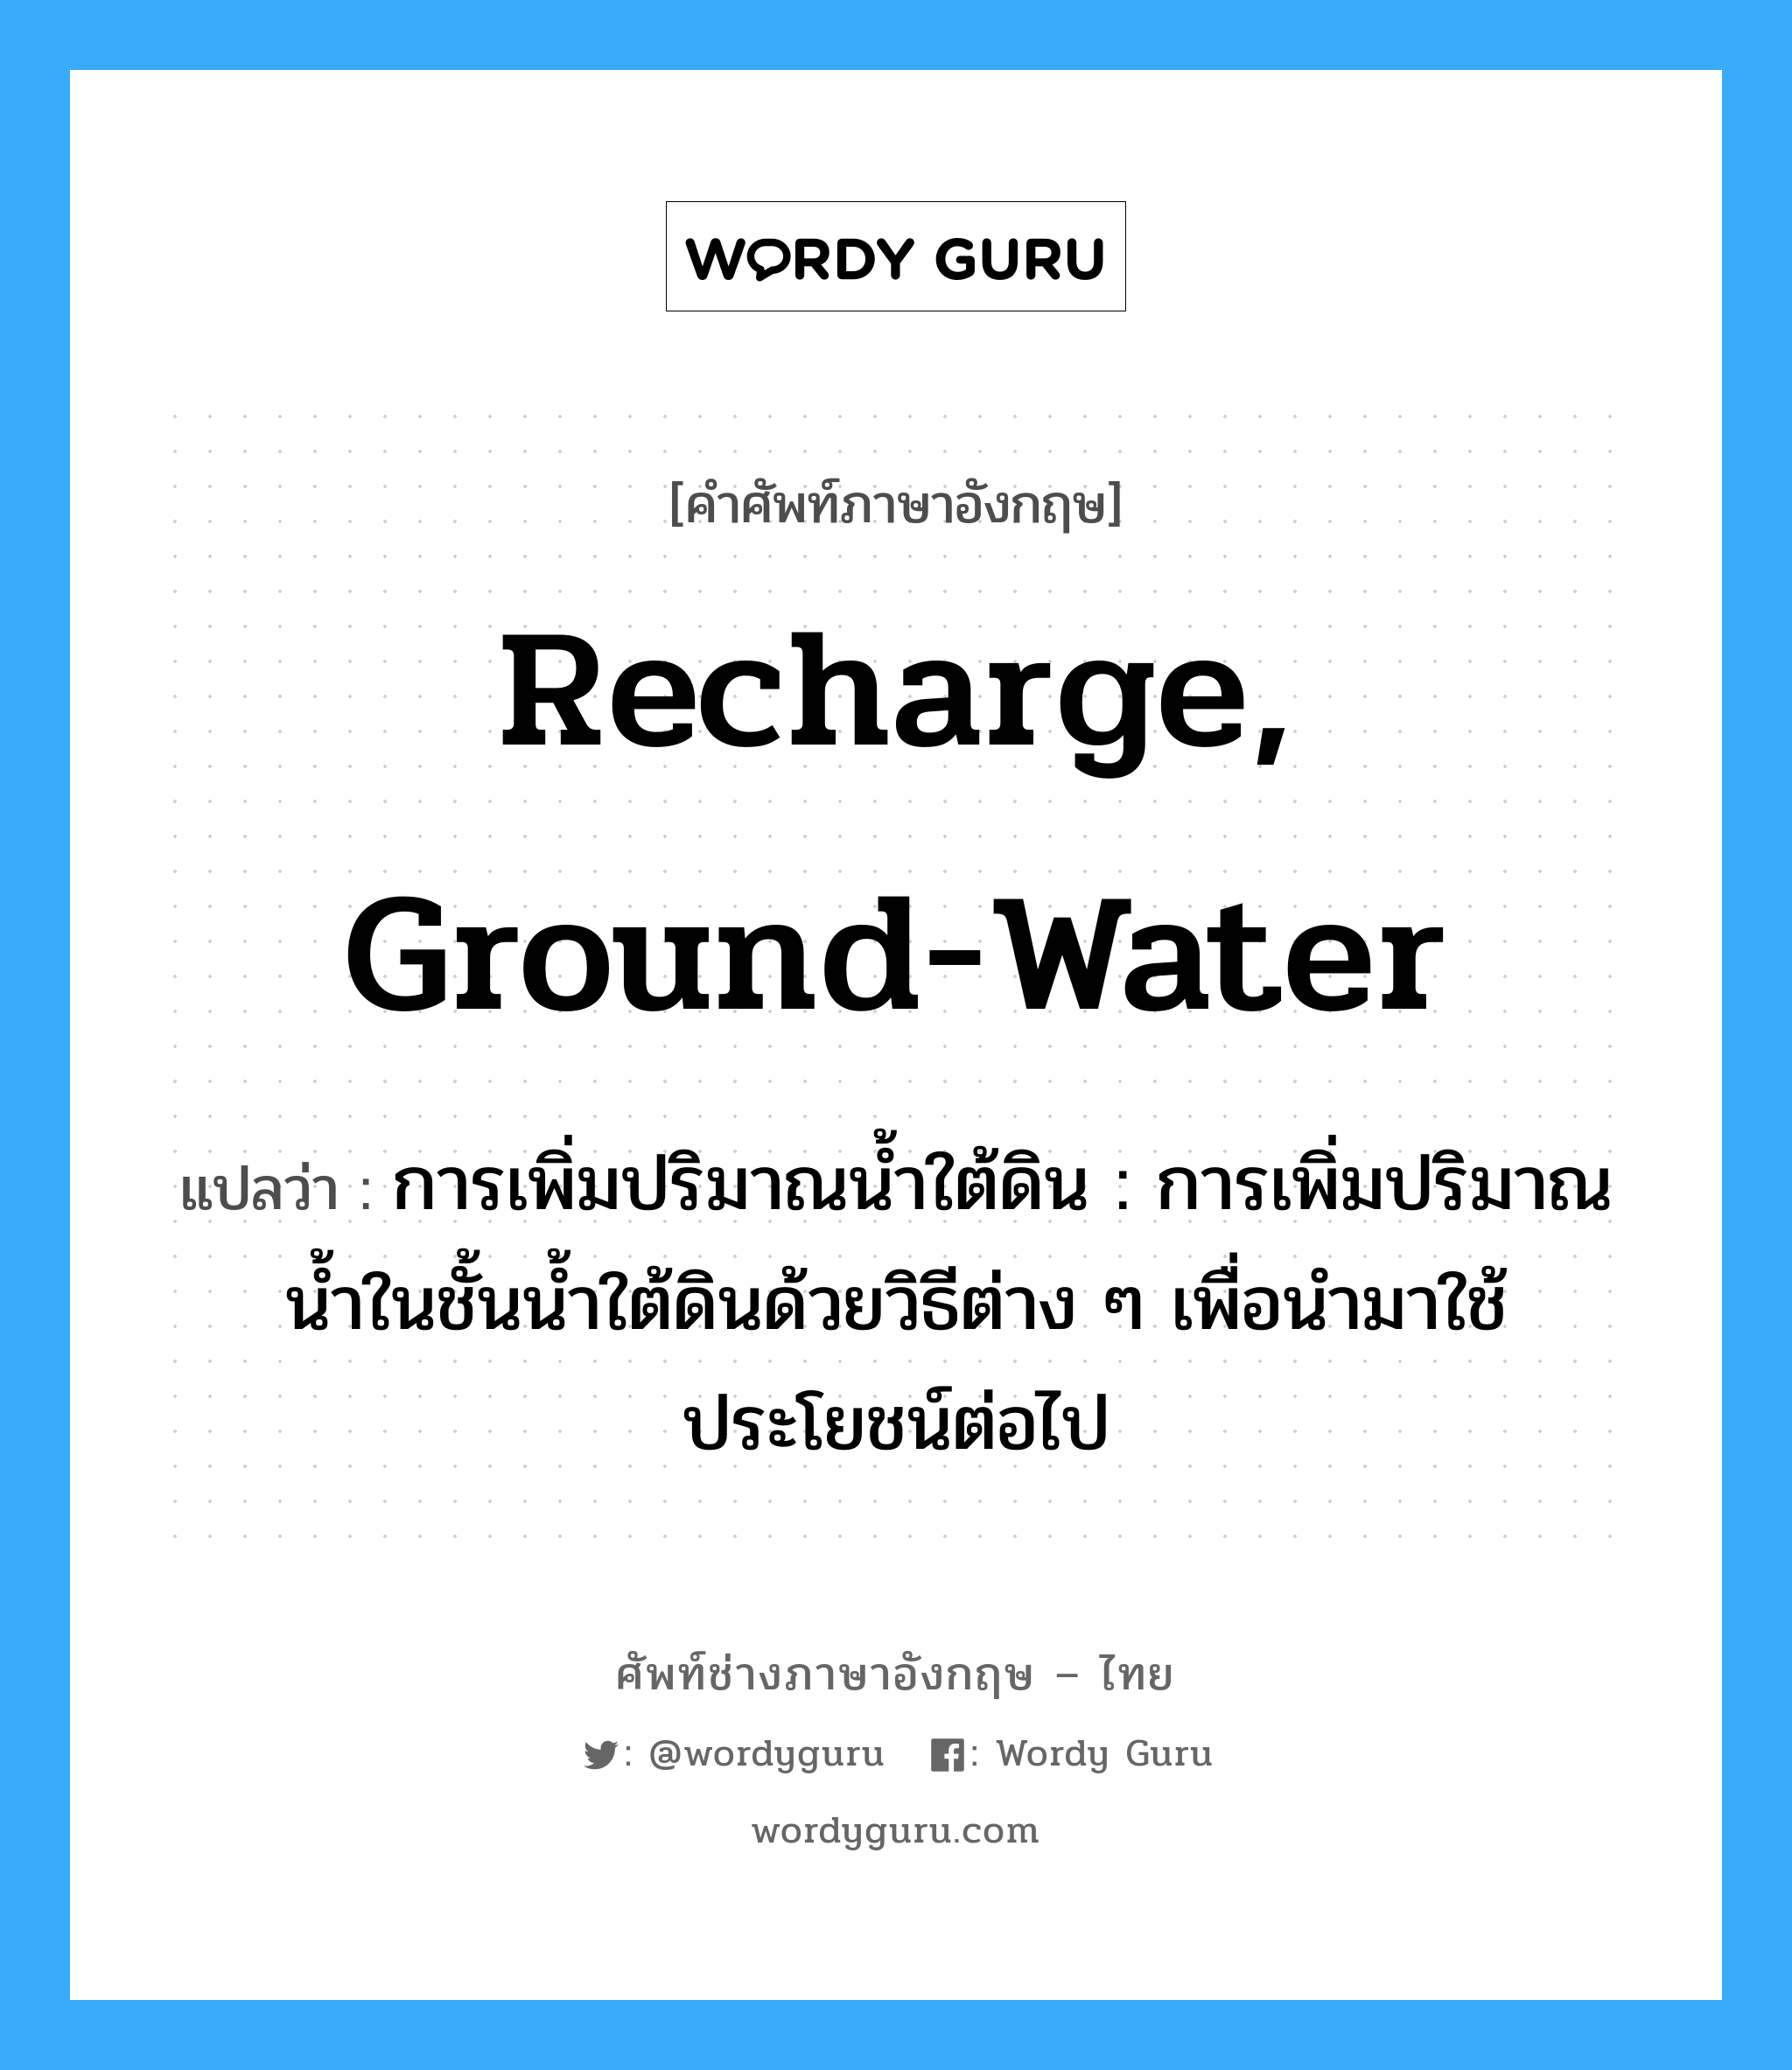 recharge, ground-water แปลว่า?, คำศัพท์ช่างภาษาอังกฤษ - ไทย recharge, ground-water คำศัพท์ภาษาอังกฤษ recharge, ground-water แปลว่า การเพิ่มปริมาณน้ำใต้ดิน : การเพิ่มปริมาณน้ำในชั้นน้ำใต้ดินด้วยวิธีต่าง ๆ เพื่อนำมาใช้ประโยชน์ต่อไป